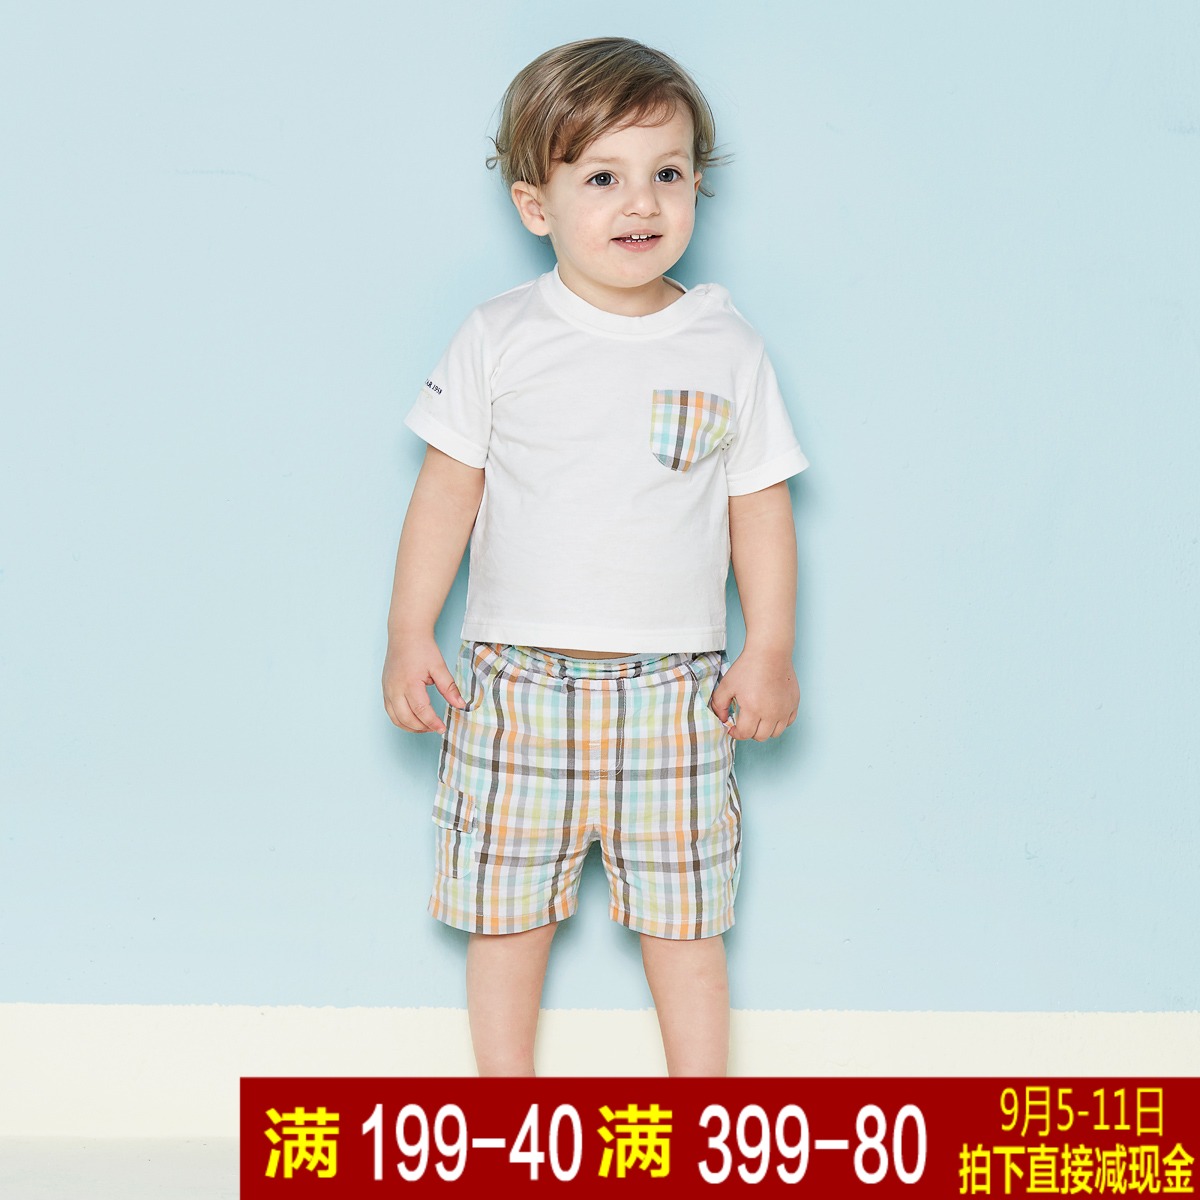 贝贝王国婴幼儿短袖T恤短裤两件套男宝宝纯棉套装小孩休闲格子裤